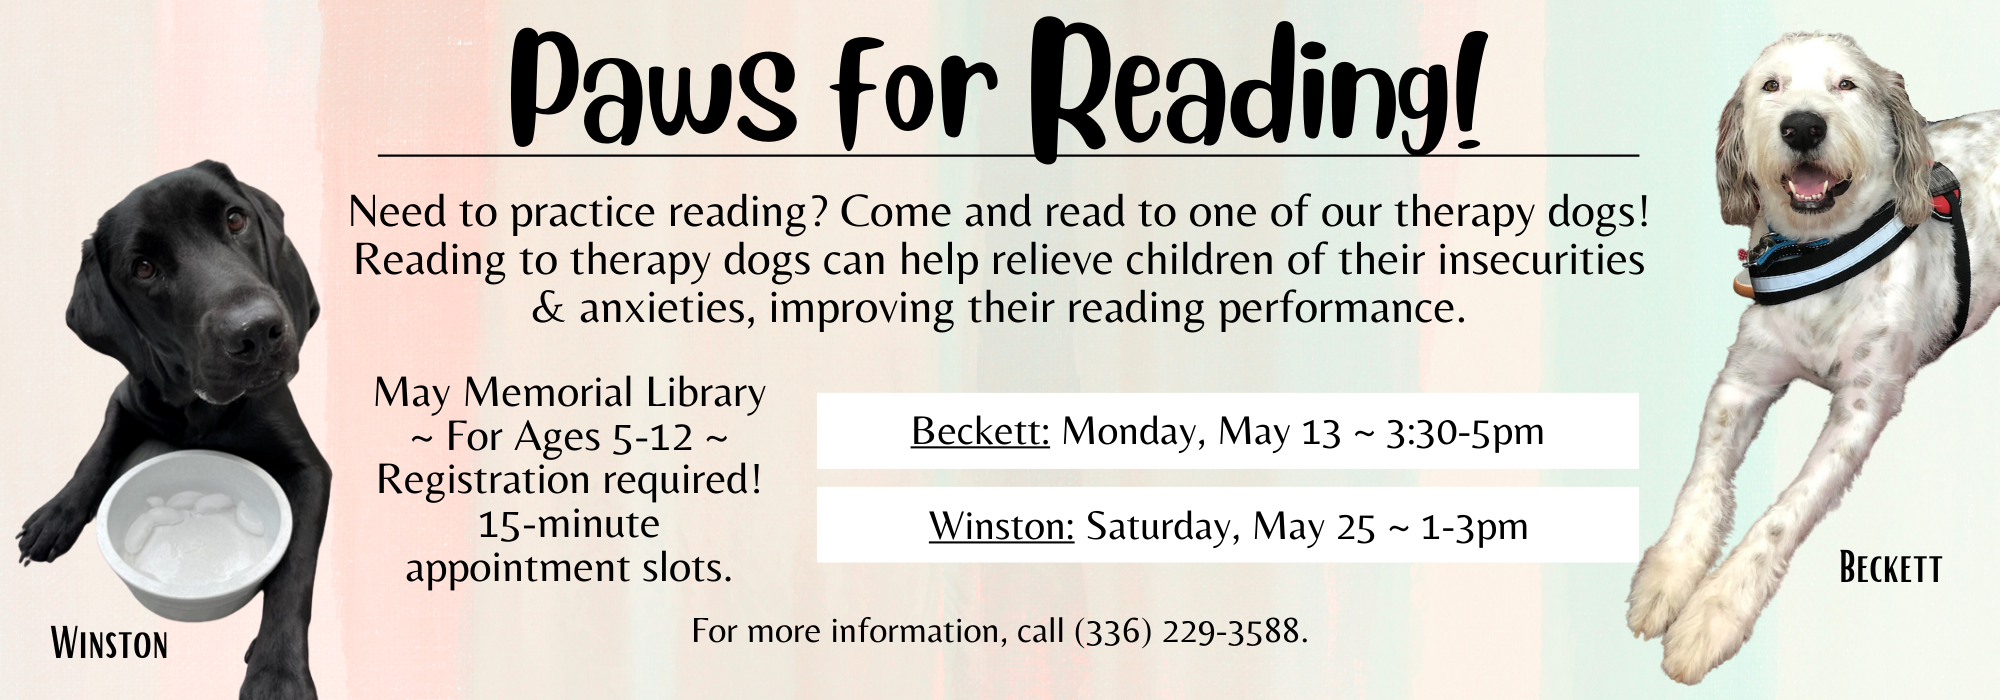 5.13 at 330 pm & 5.25 at 1 at pm - Paws for Reading at May Memorial